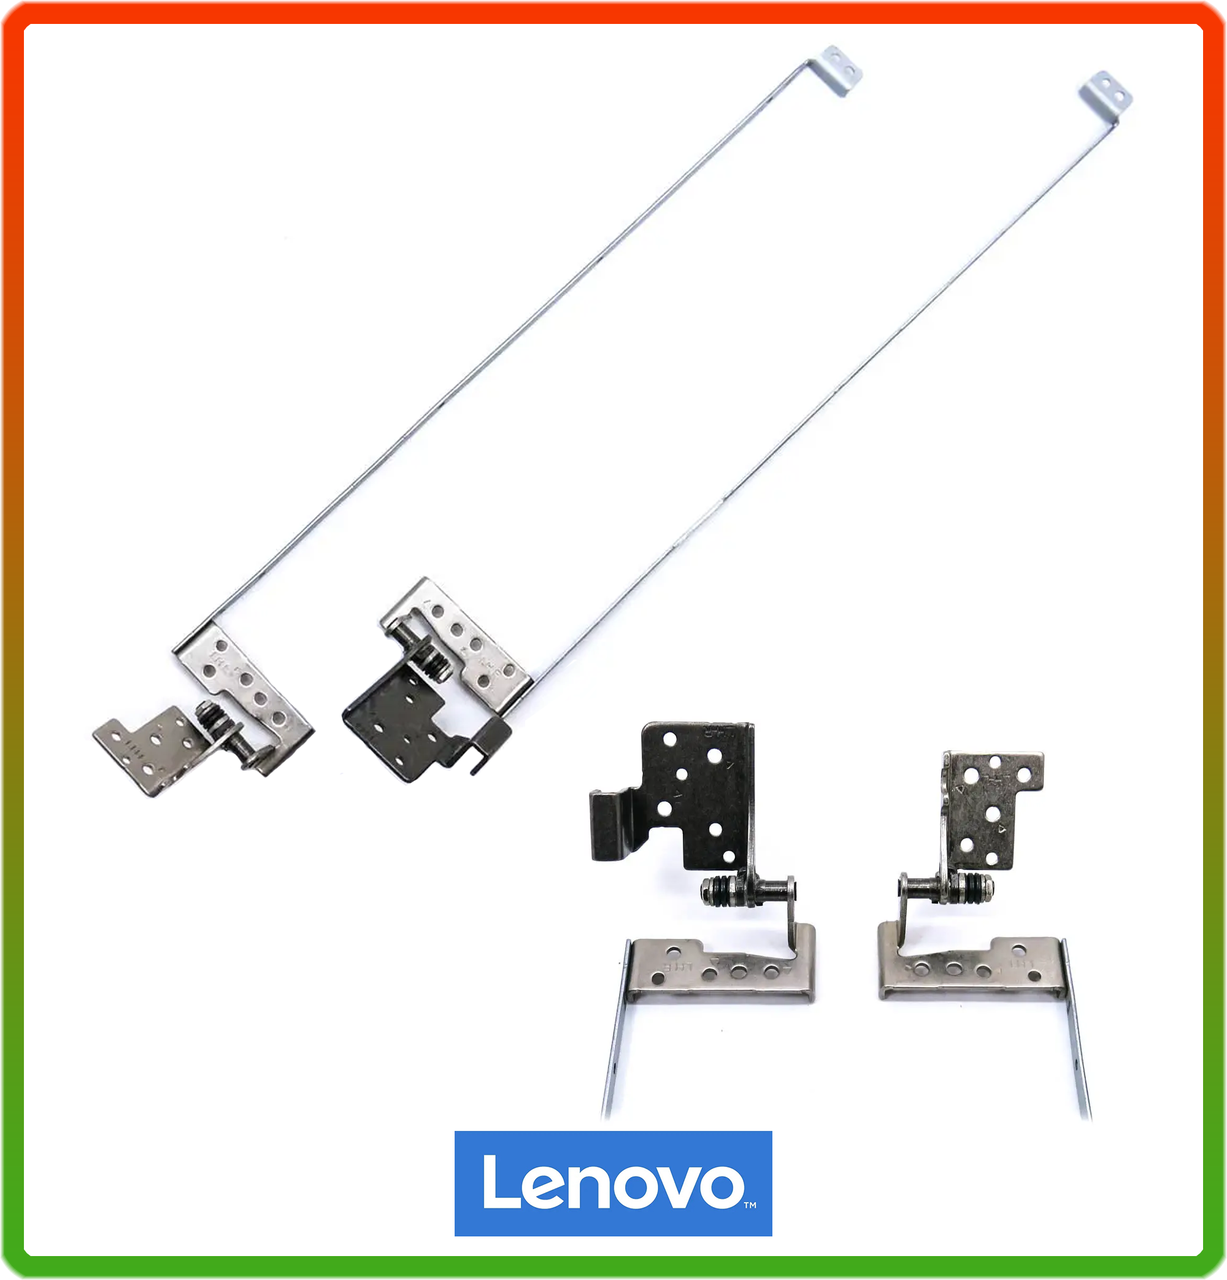 Петли для Lenovo G700 Series (13N0-B5M0203, 13N0-B5M0202). Пара, ліва + права G700 series